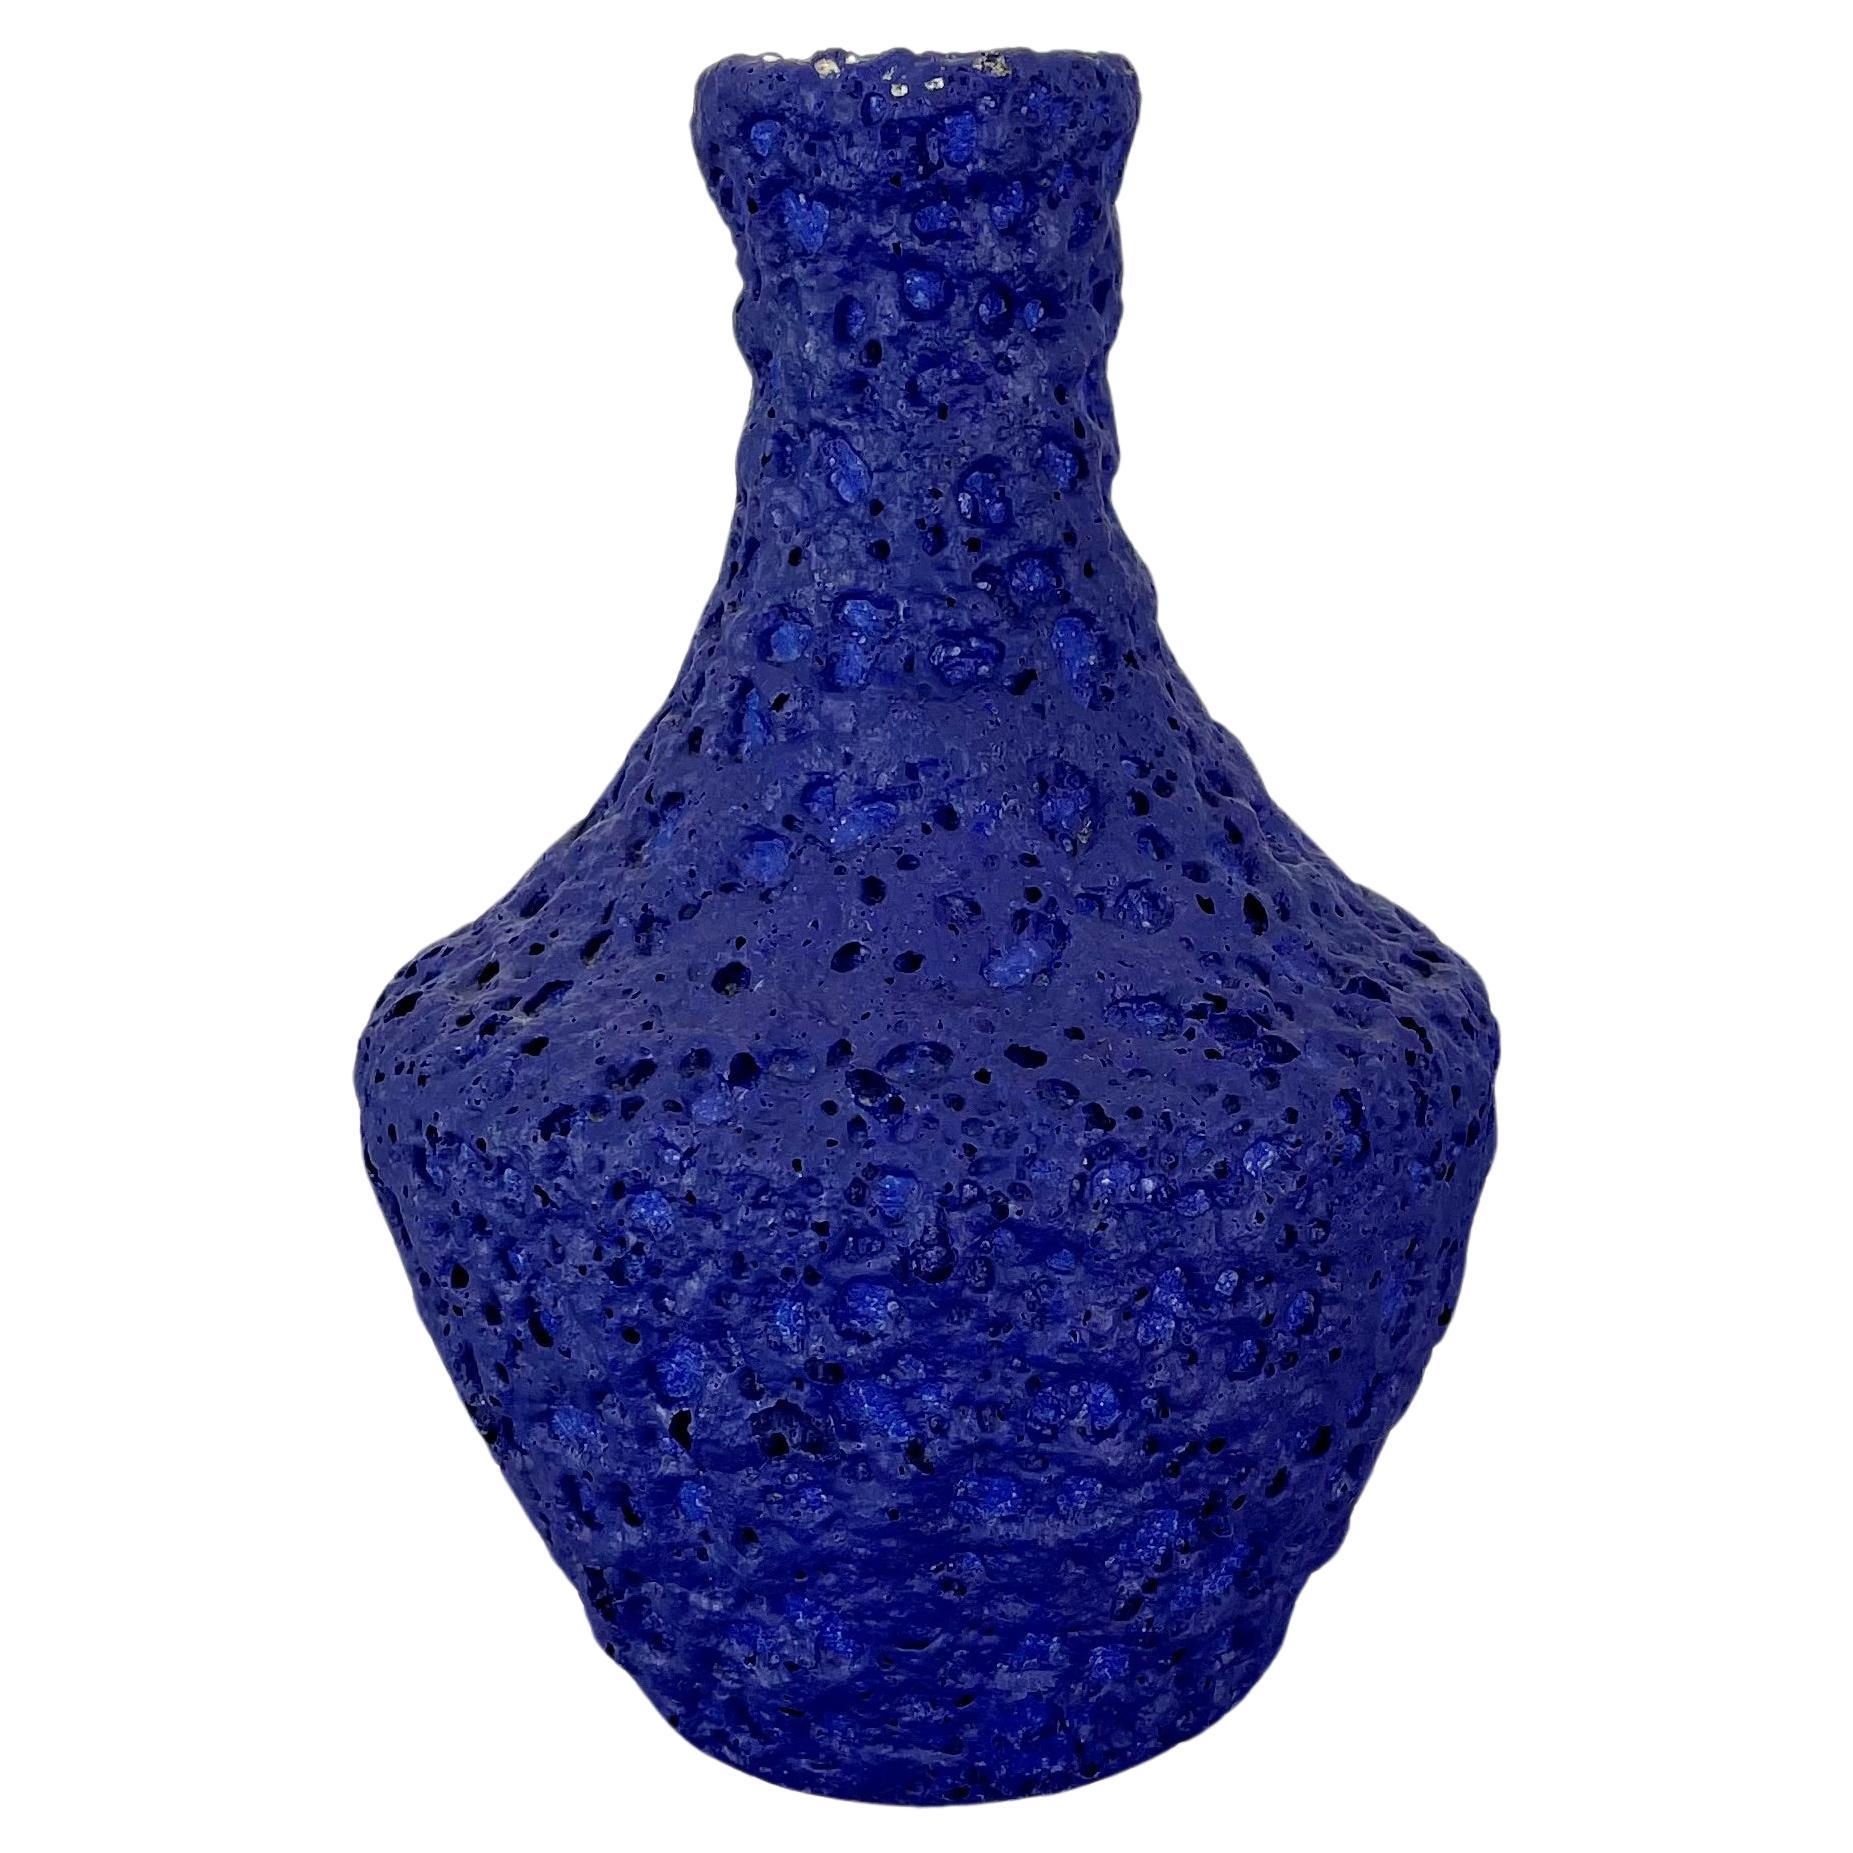 Blaue brutalistische Vase aus farbenfroher Keramik von Silberdistel, W. Germany, 1950er Jahre